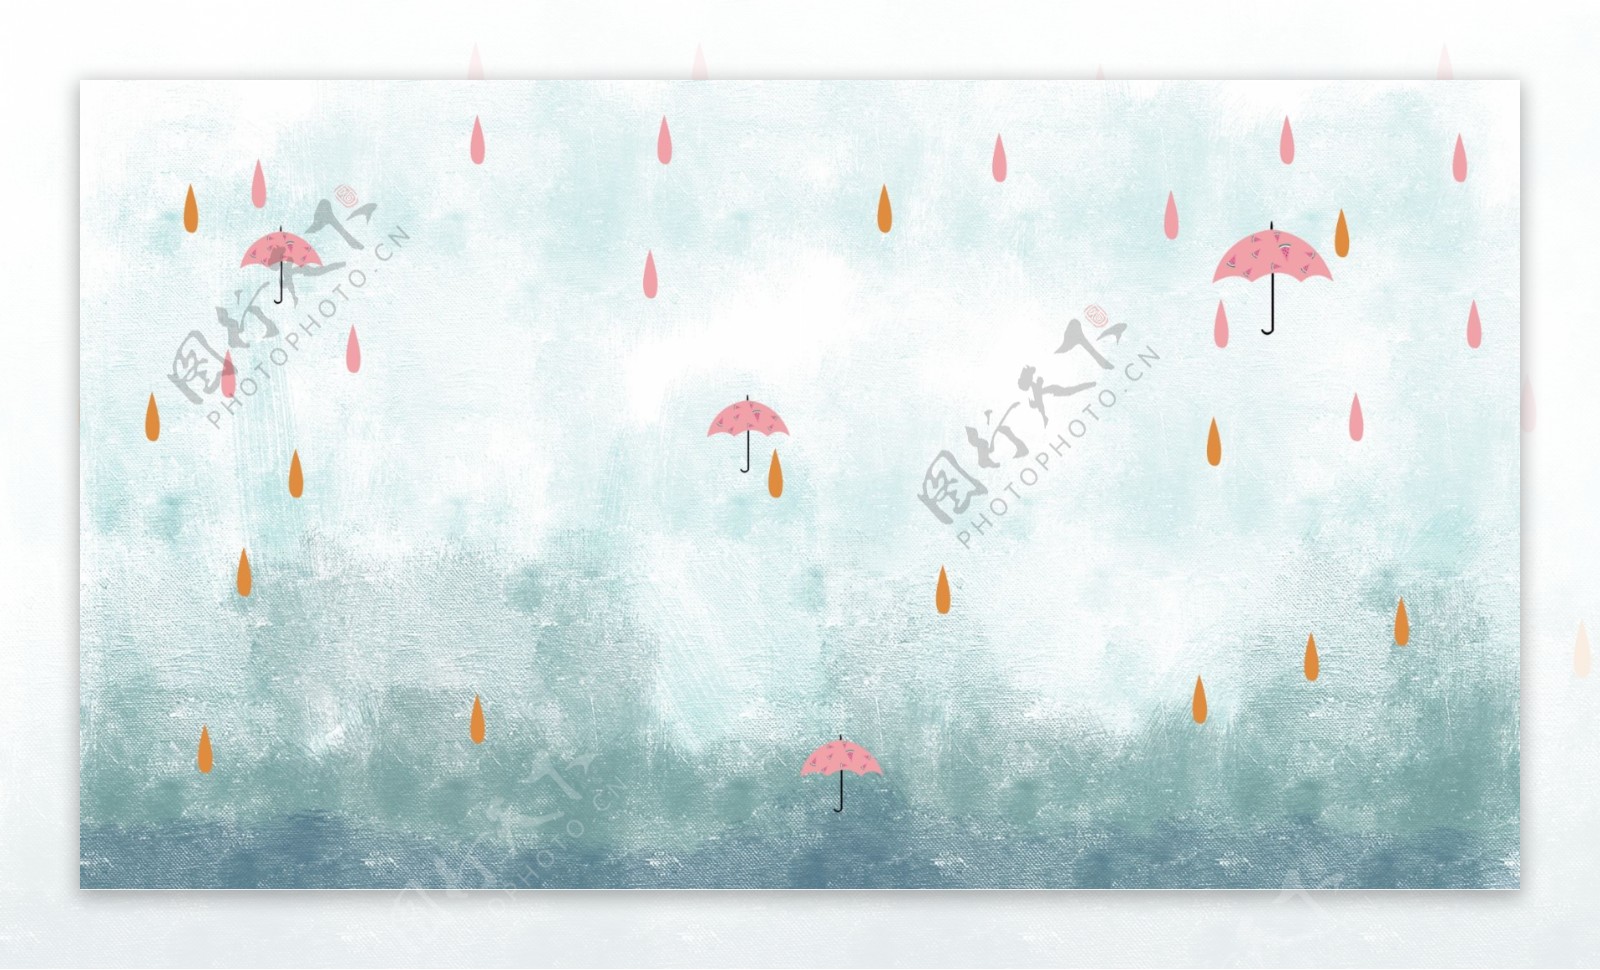 彩绘秋季雨中小伞背景素材